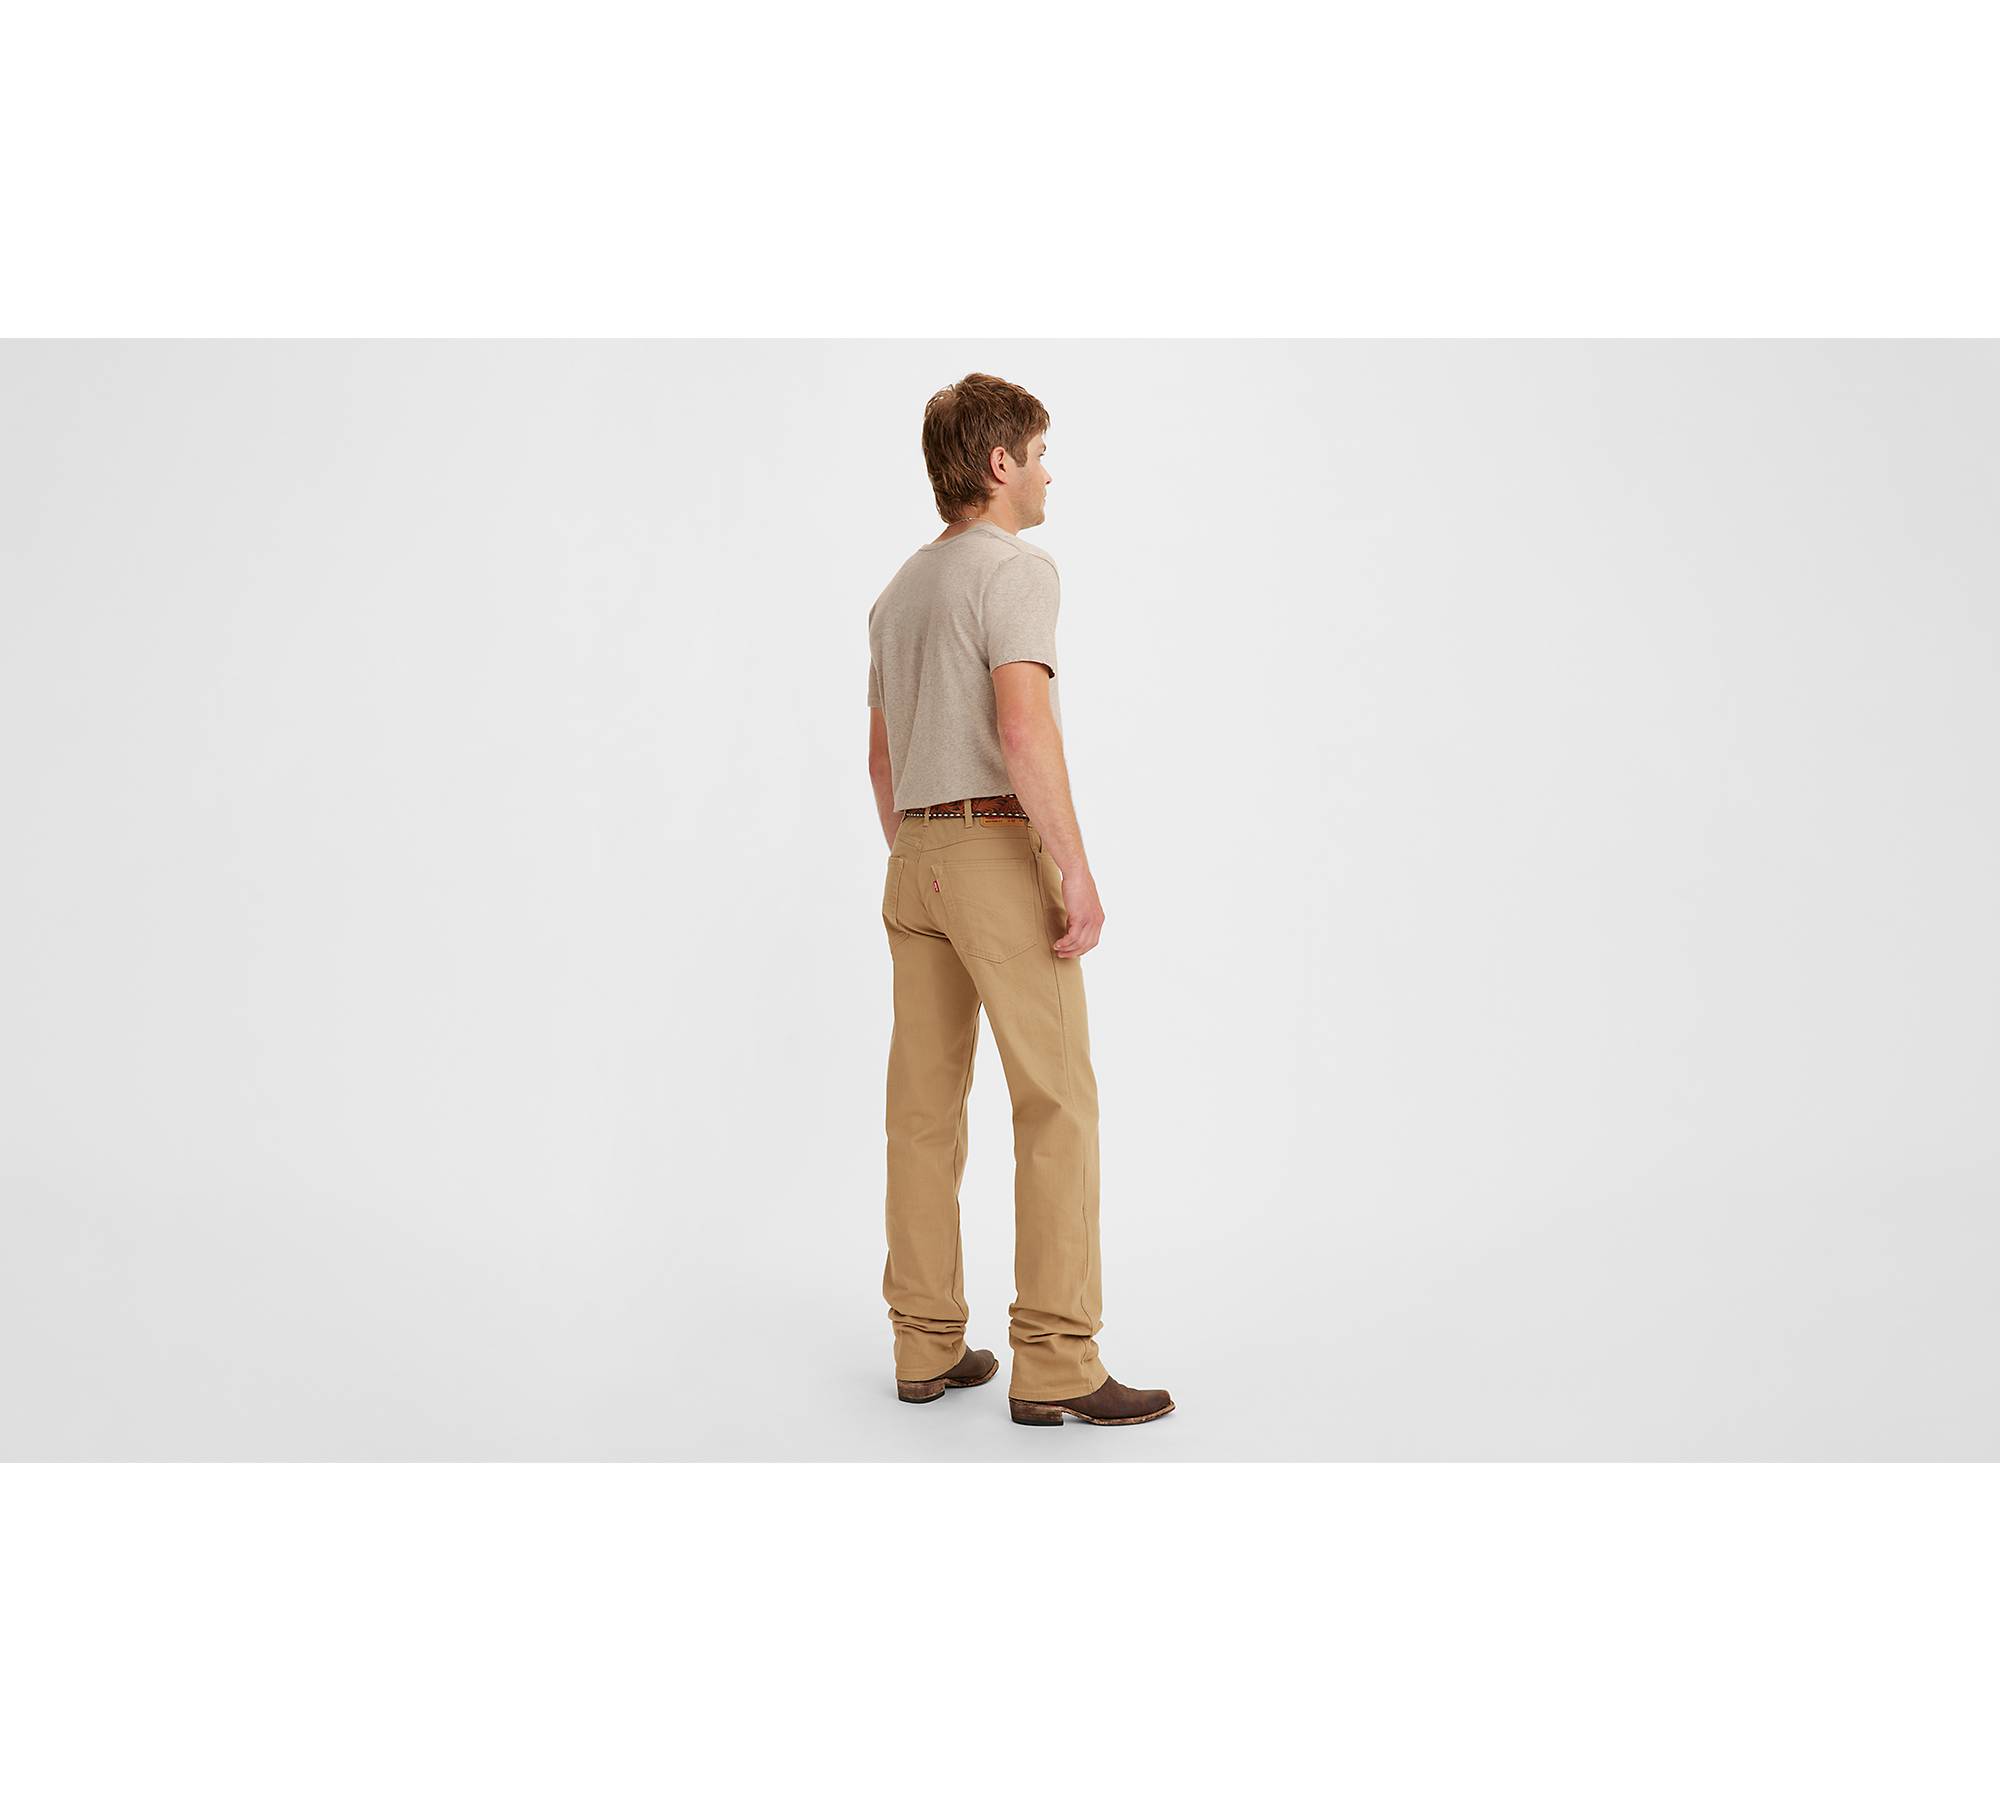 Western Fit Men's Pants - Brown | Levi's® US